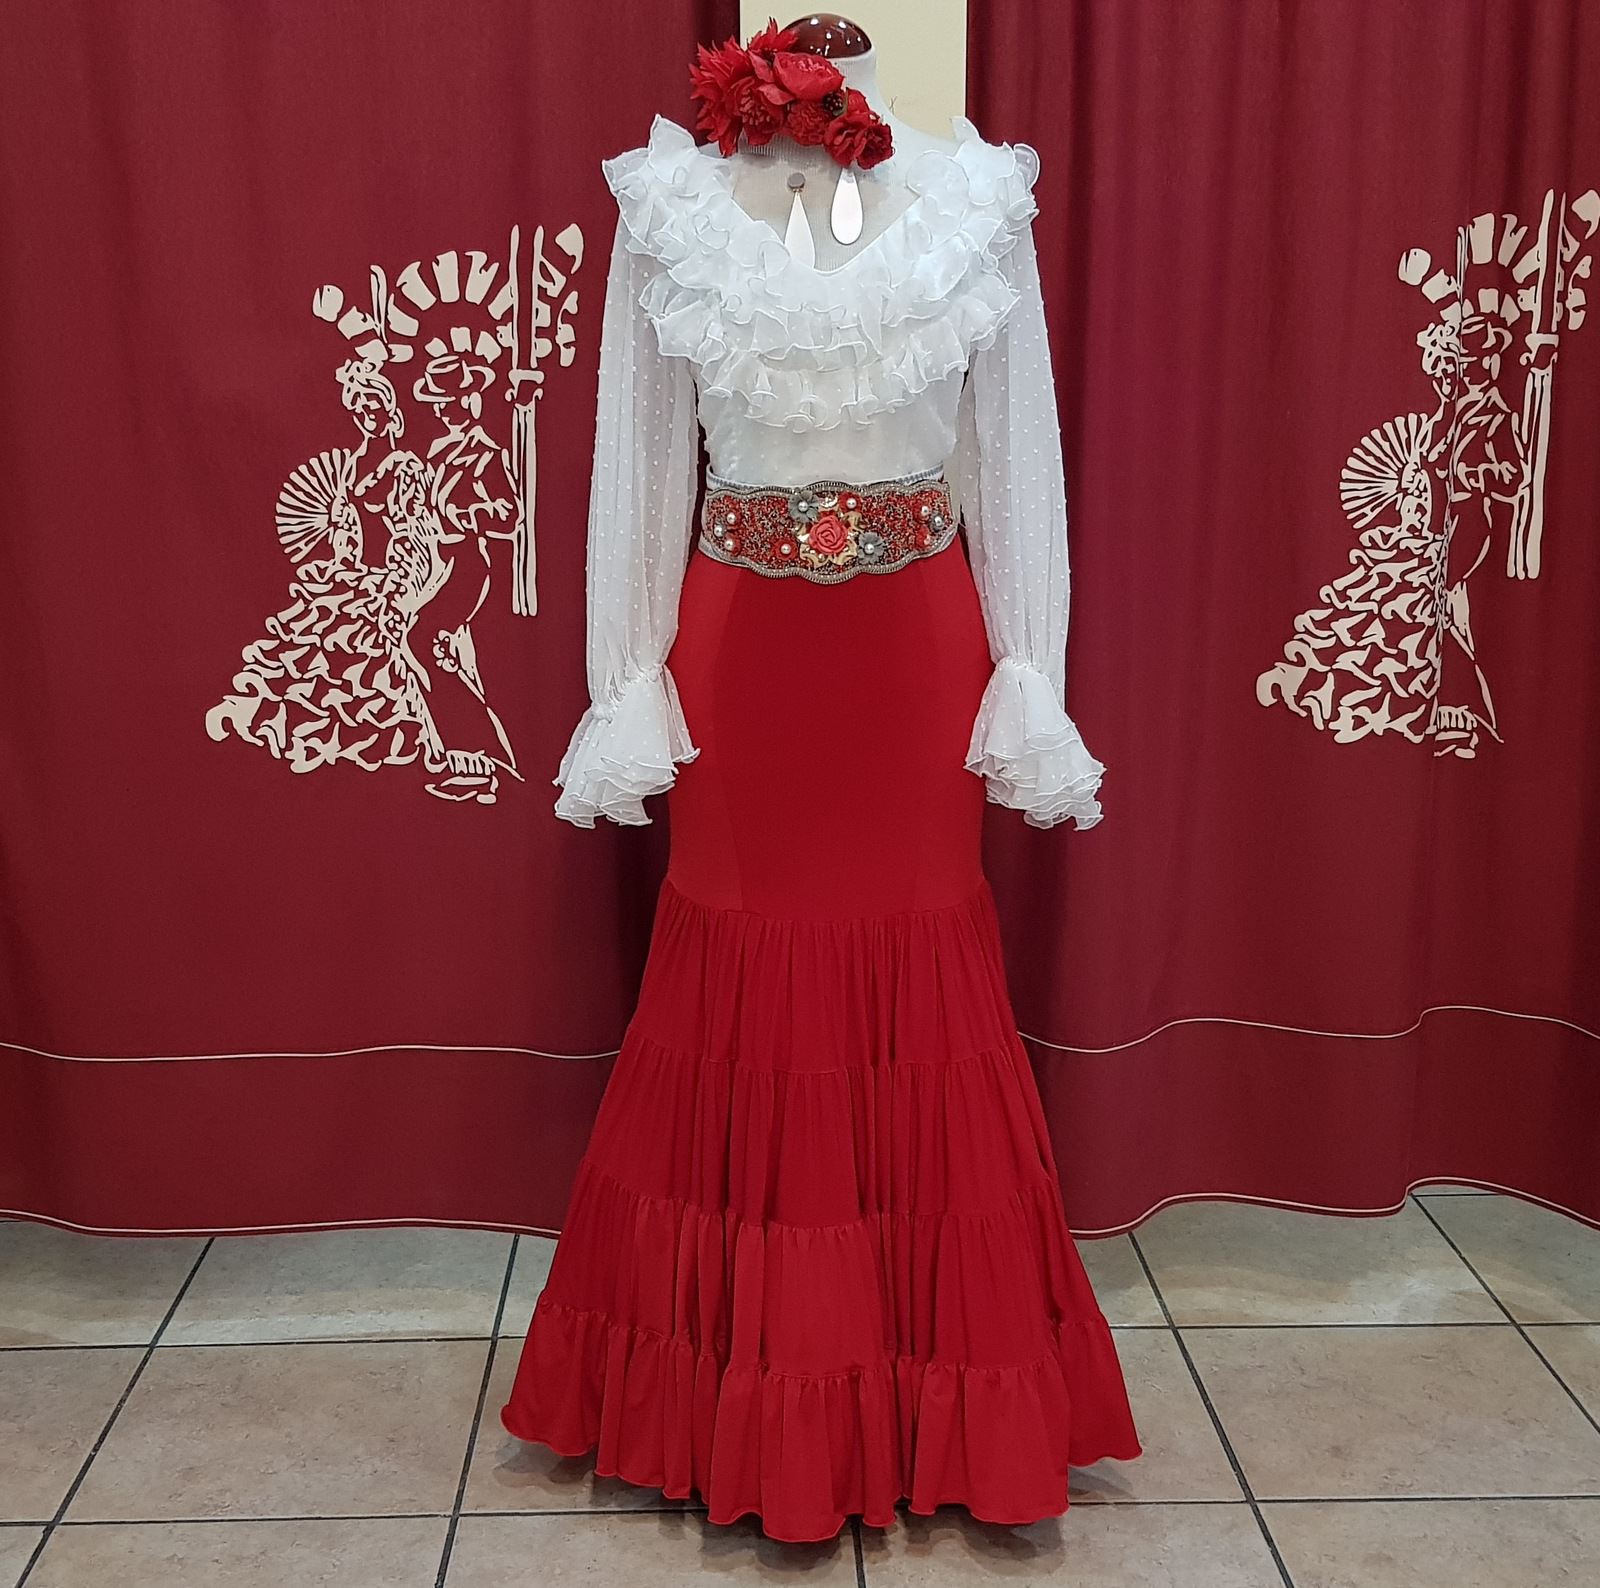 Falda Flamenca Barata modelo Tarantos color rojo-Talla 36